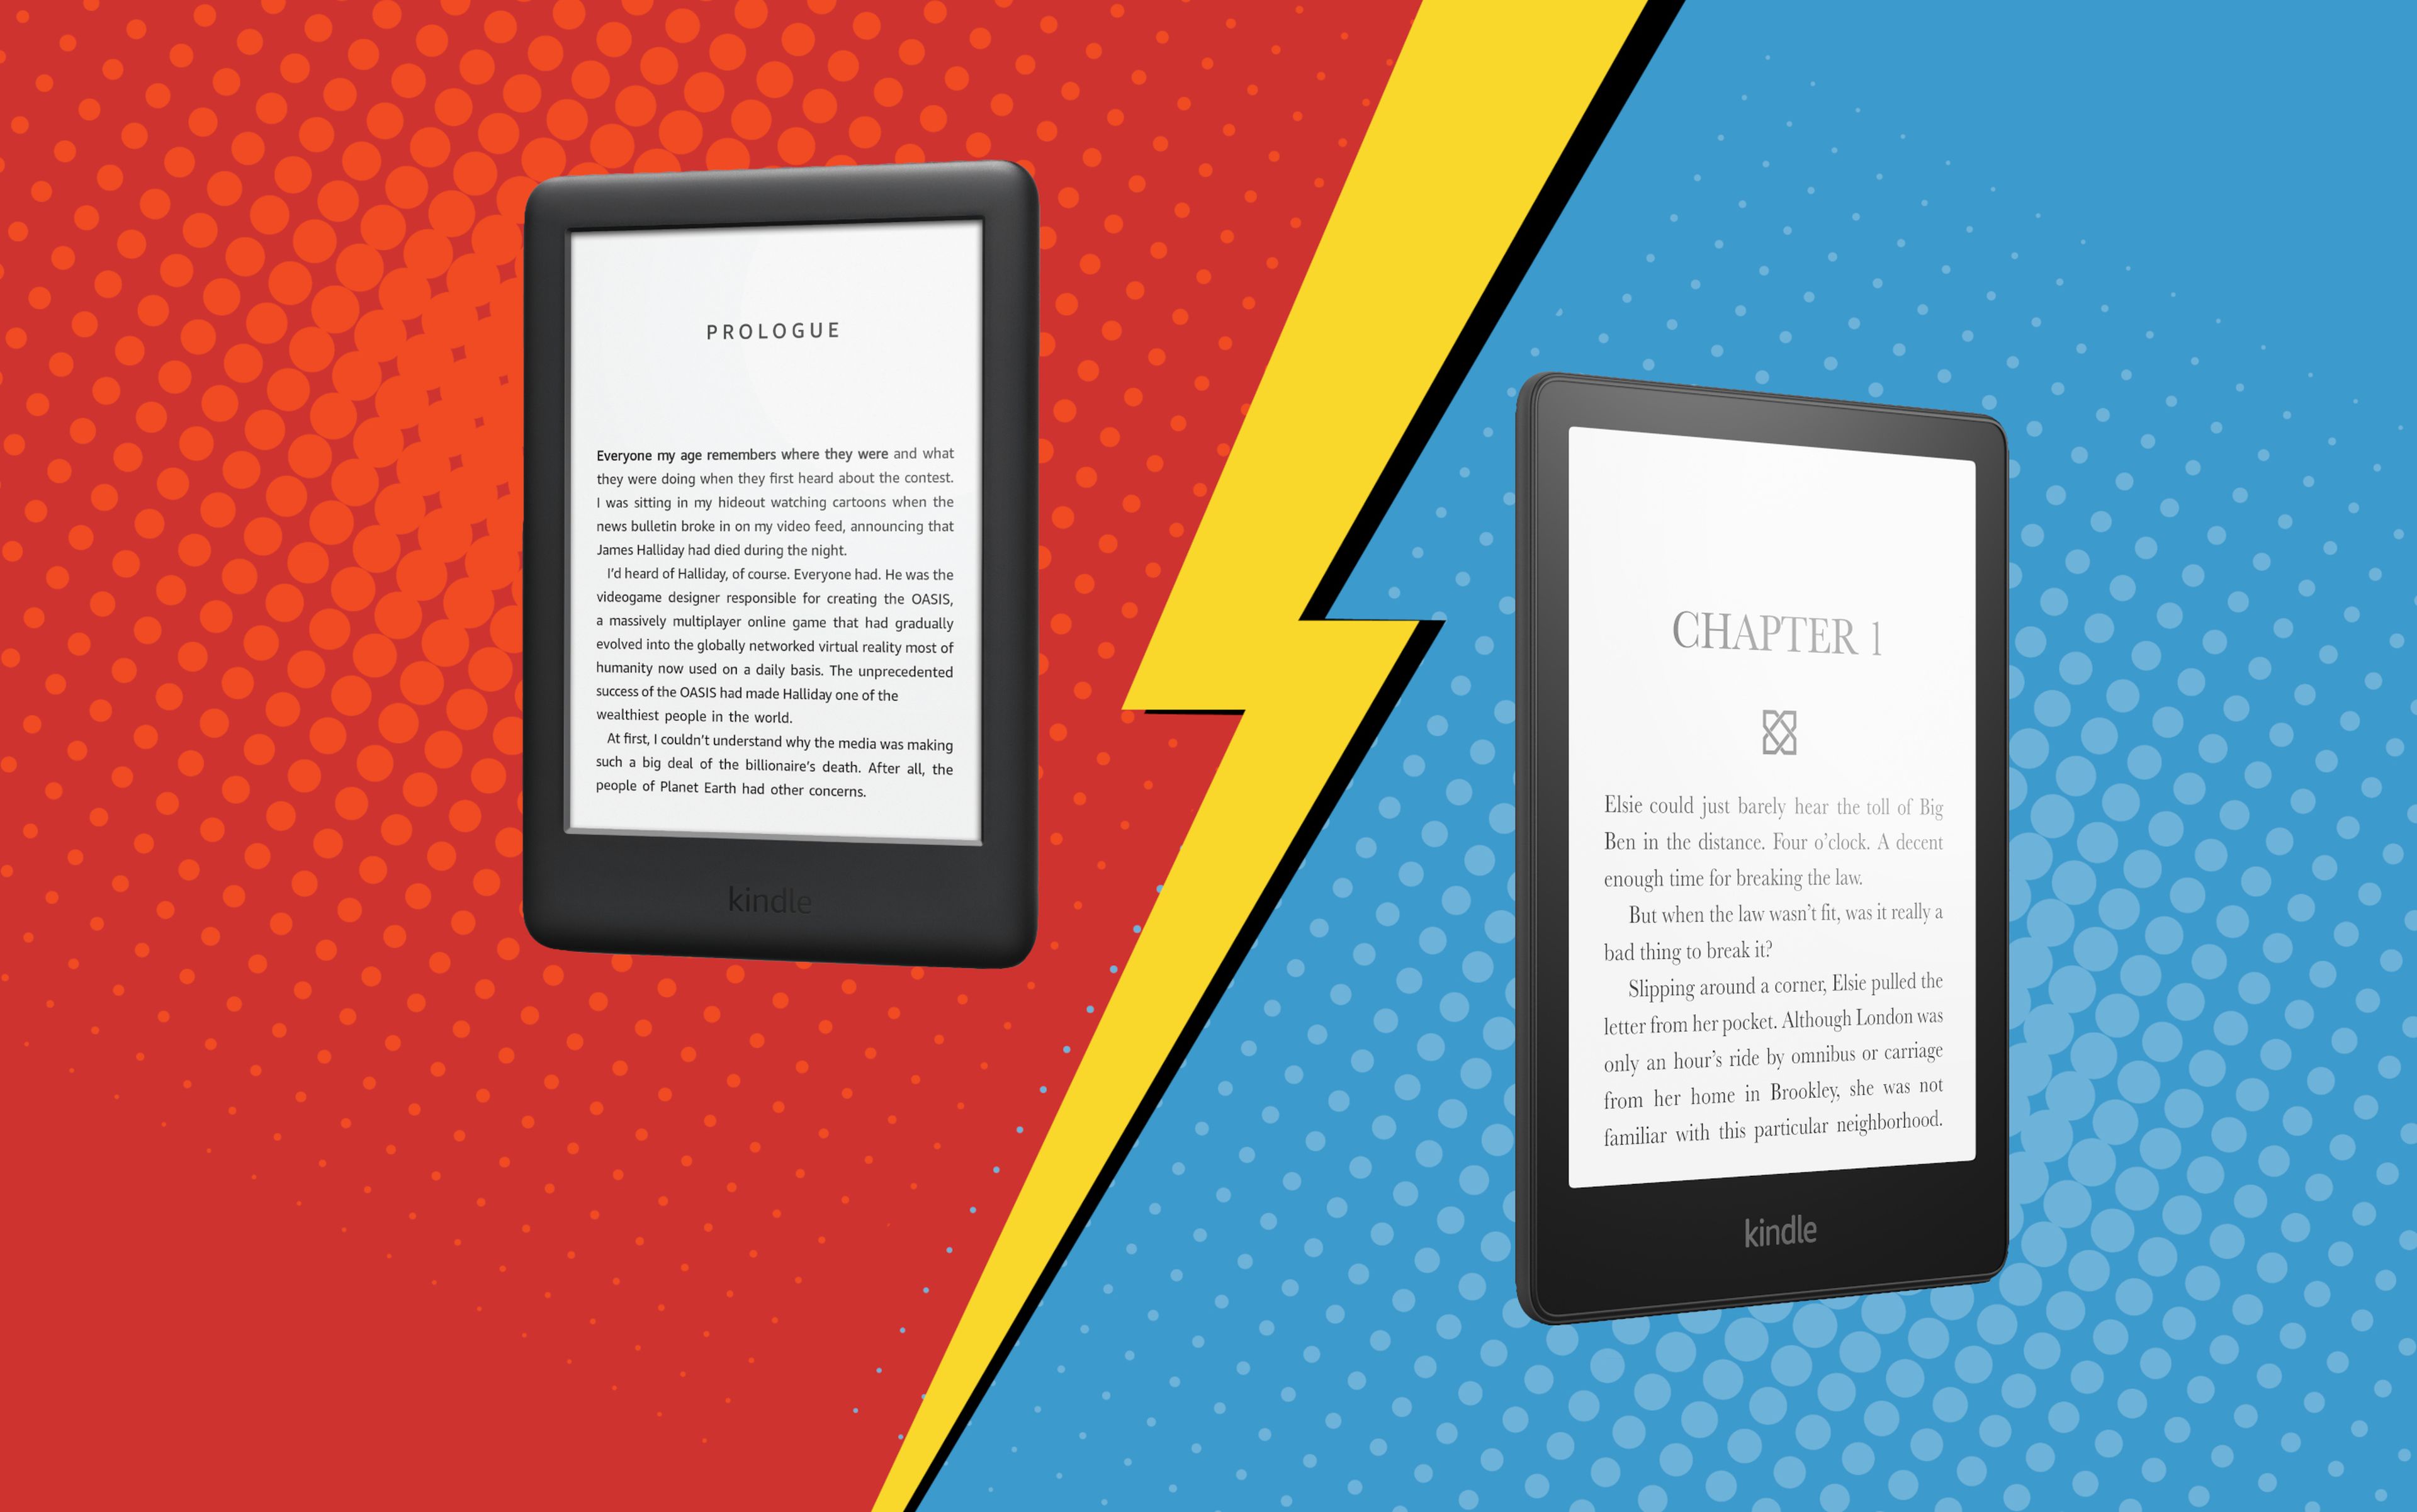 Ebook Kindle: Modelos y características